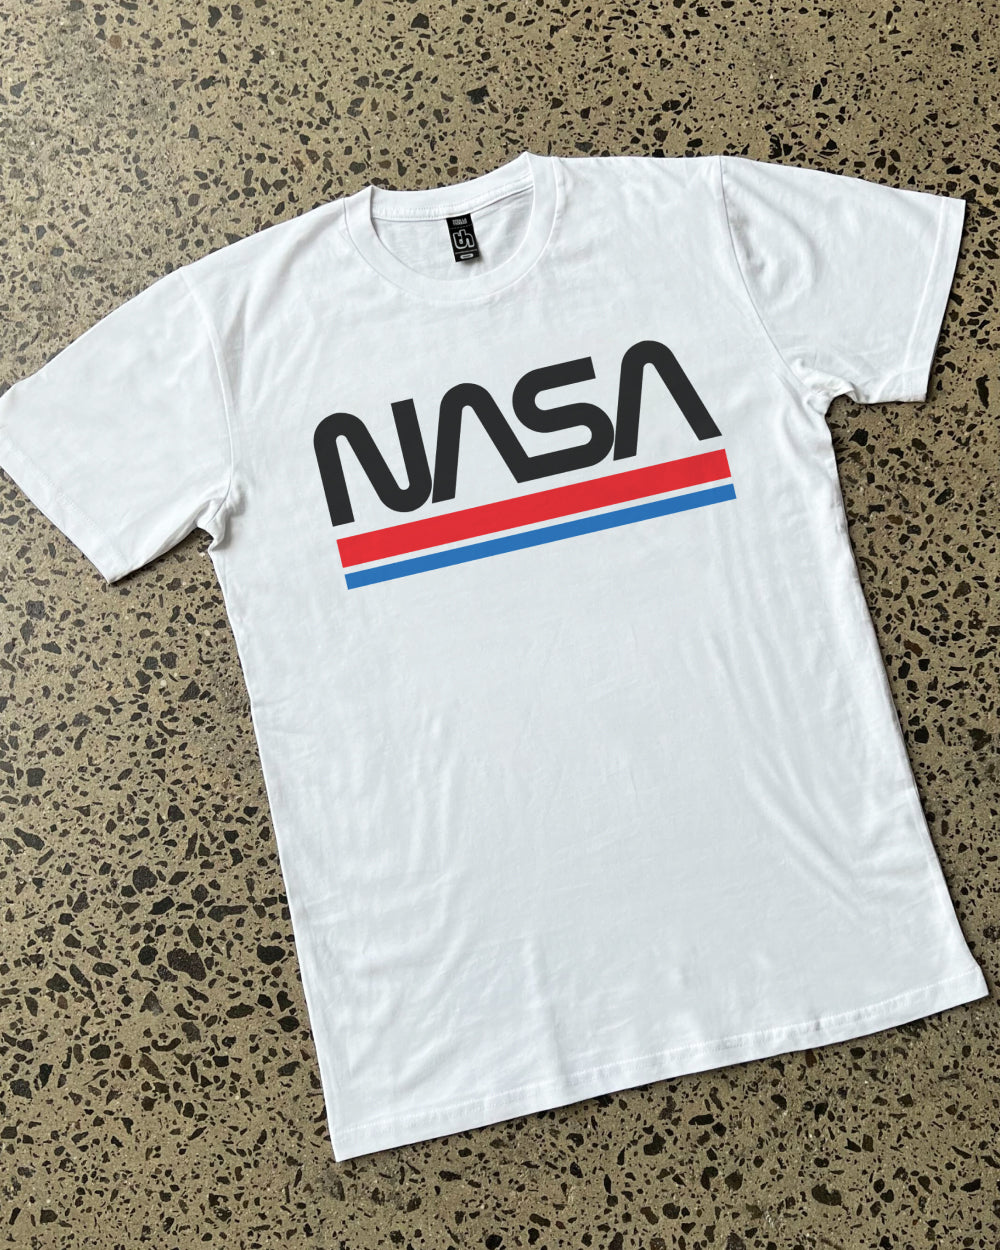 NASA Stripes T-Shirt Australia Online #colour_white